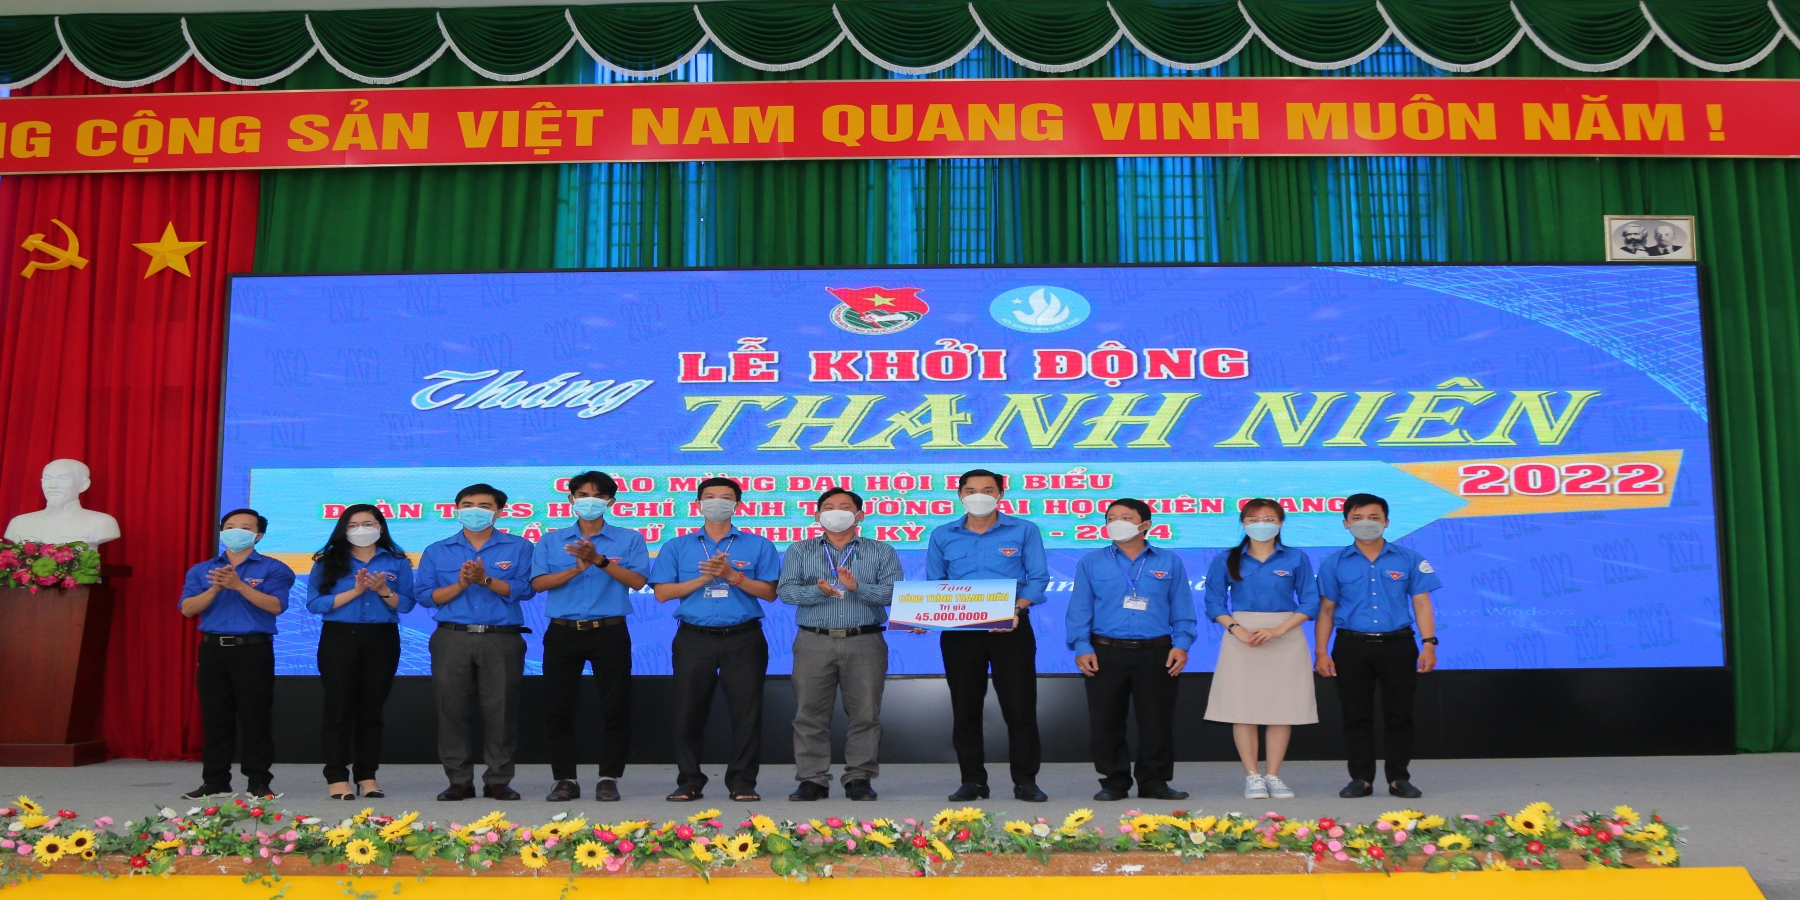 Đoàn trường Đại học Kiên Giang khởi động Tháng Thanh niên 2022 với chủ đề “Tuổi trẻ sáng tạo”